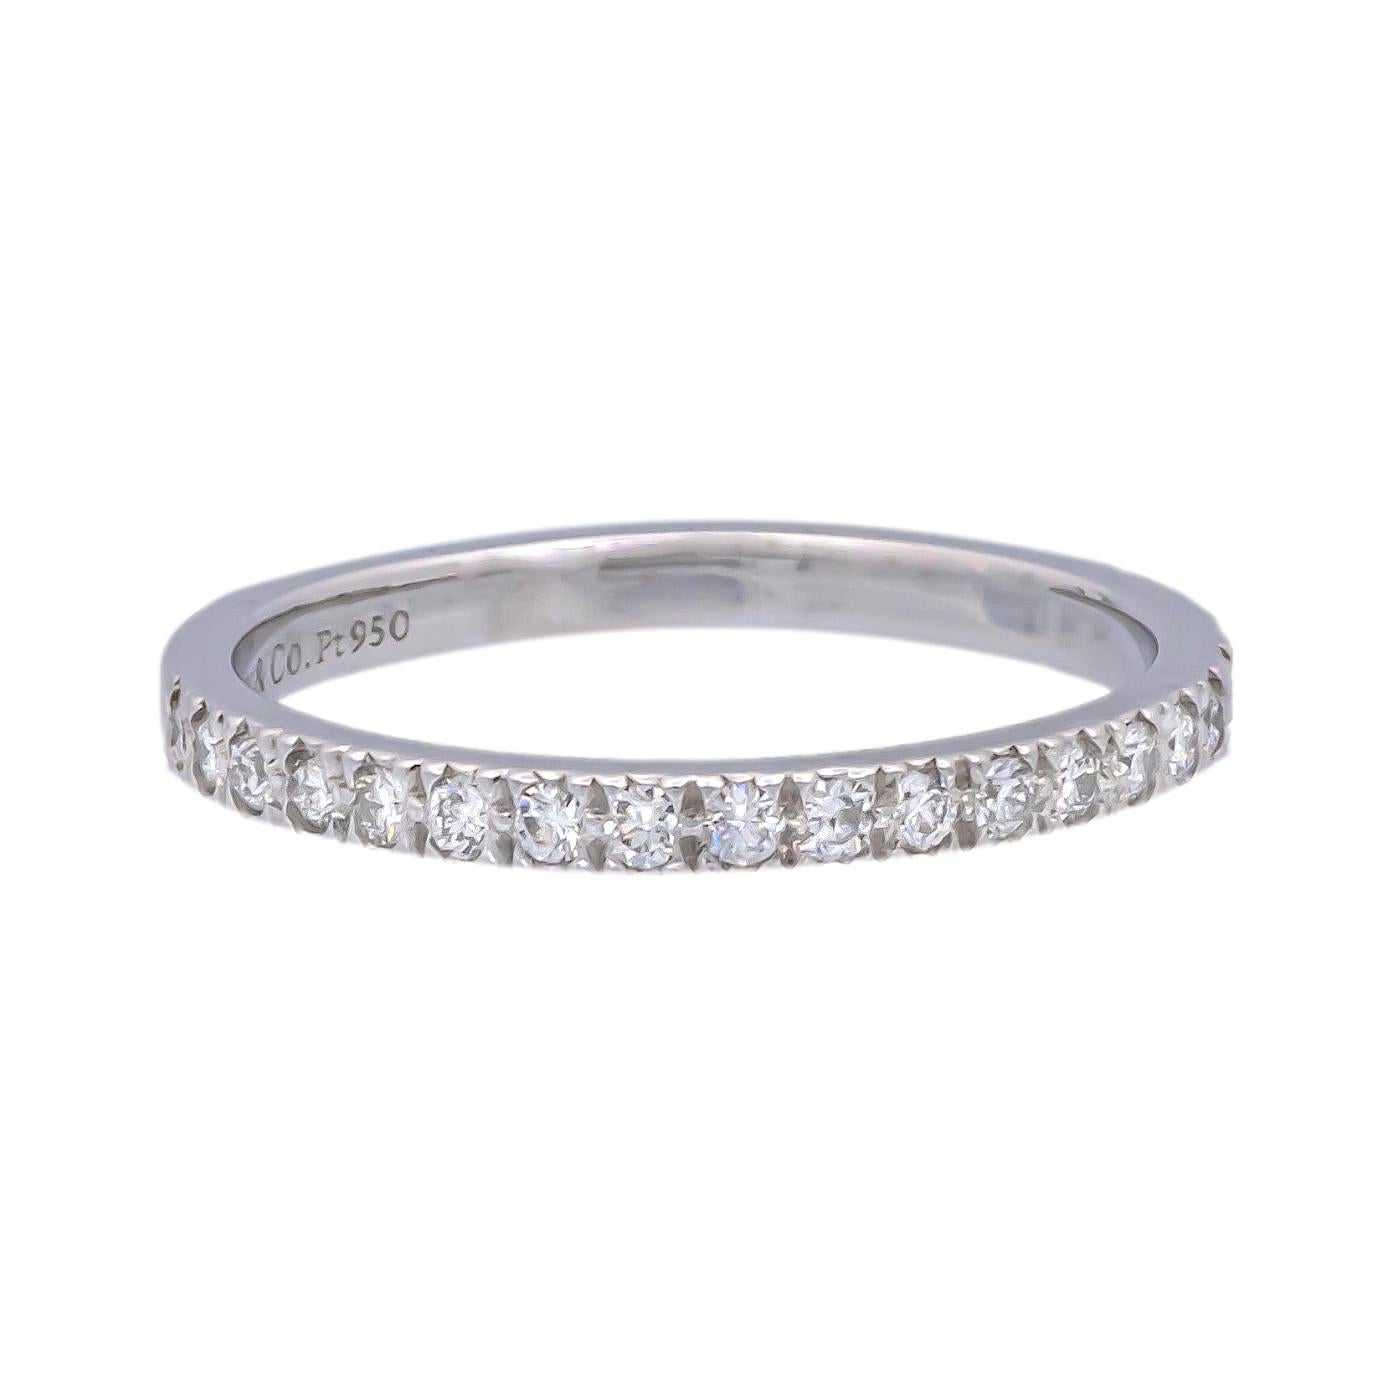 Tiffany & Co. Bague de la collection Novo finement travaillée en platine avec 18 diamants ronds de taille brillant d'un poids total de 0,18 carats environ incrustés dans un sertissage de perles allant jusqu'à la moitié de la circonférence.